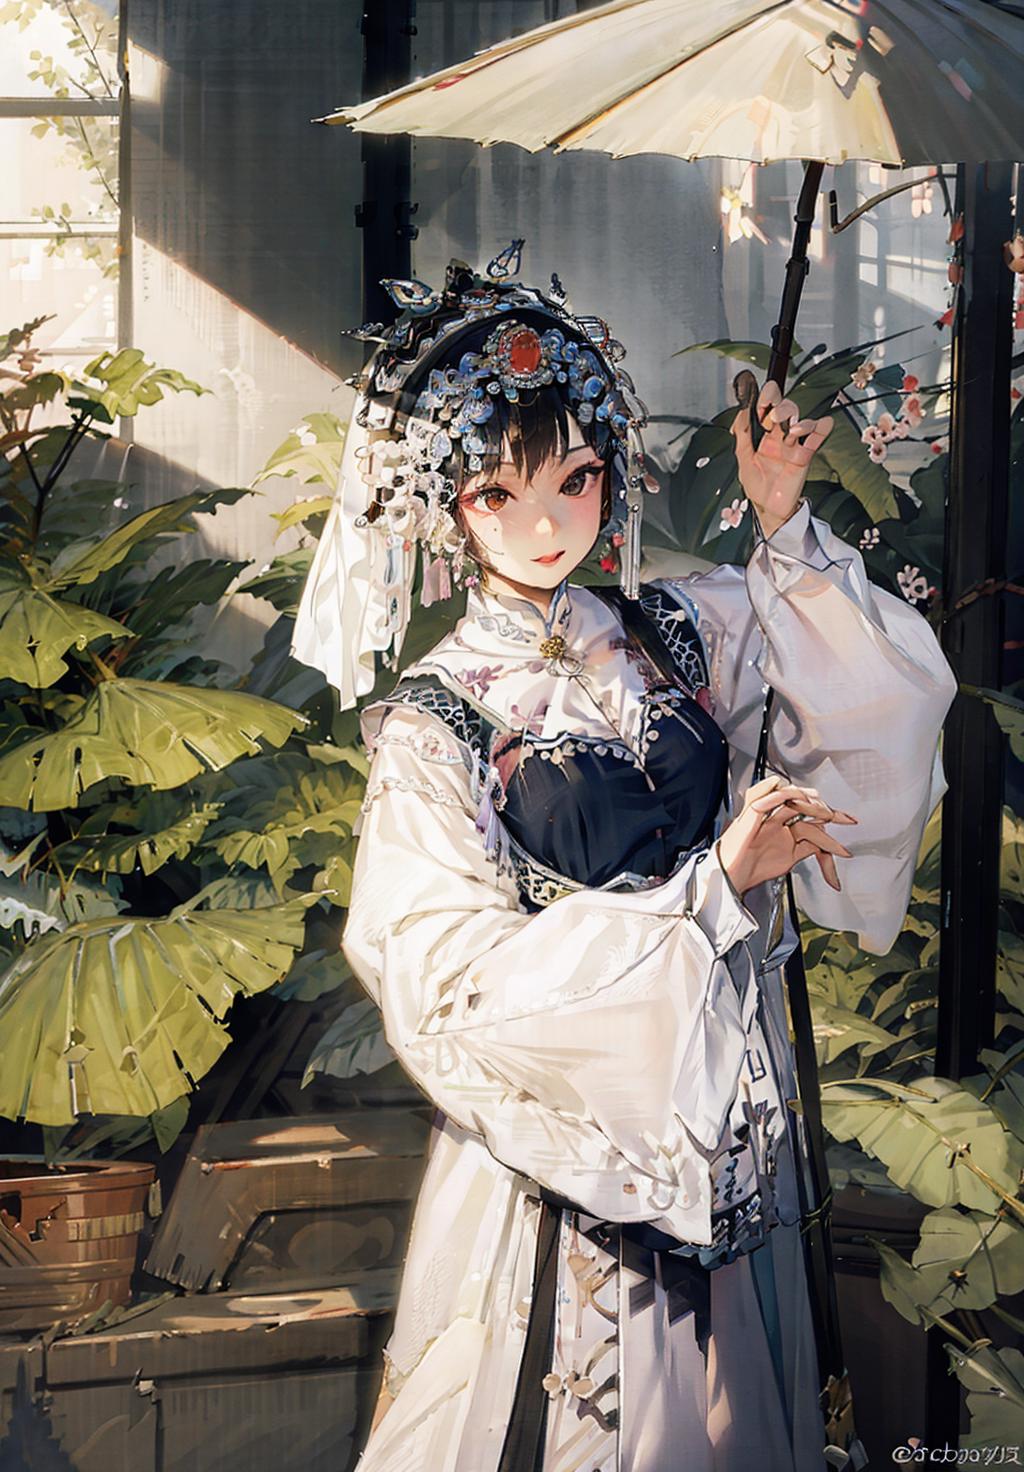 戏装 Chinese Opera Costumes image by PrometheusX